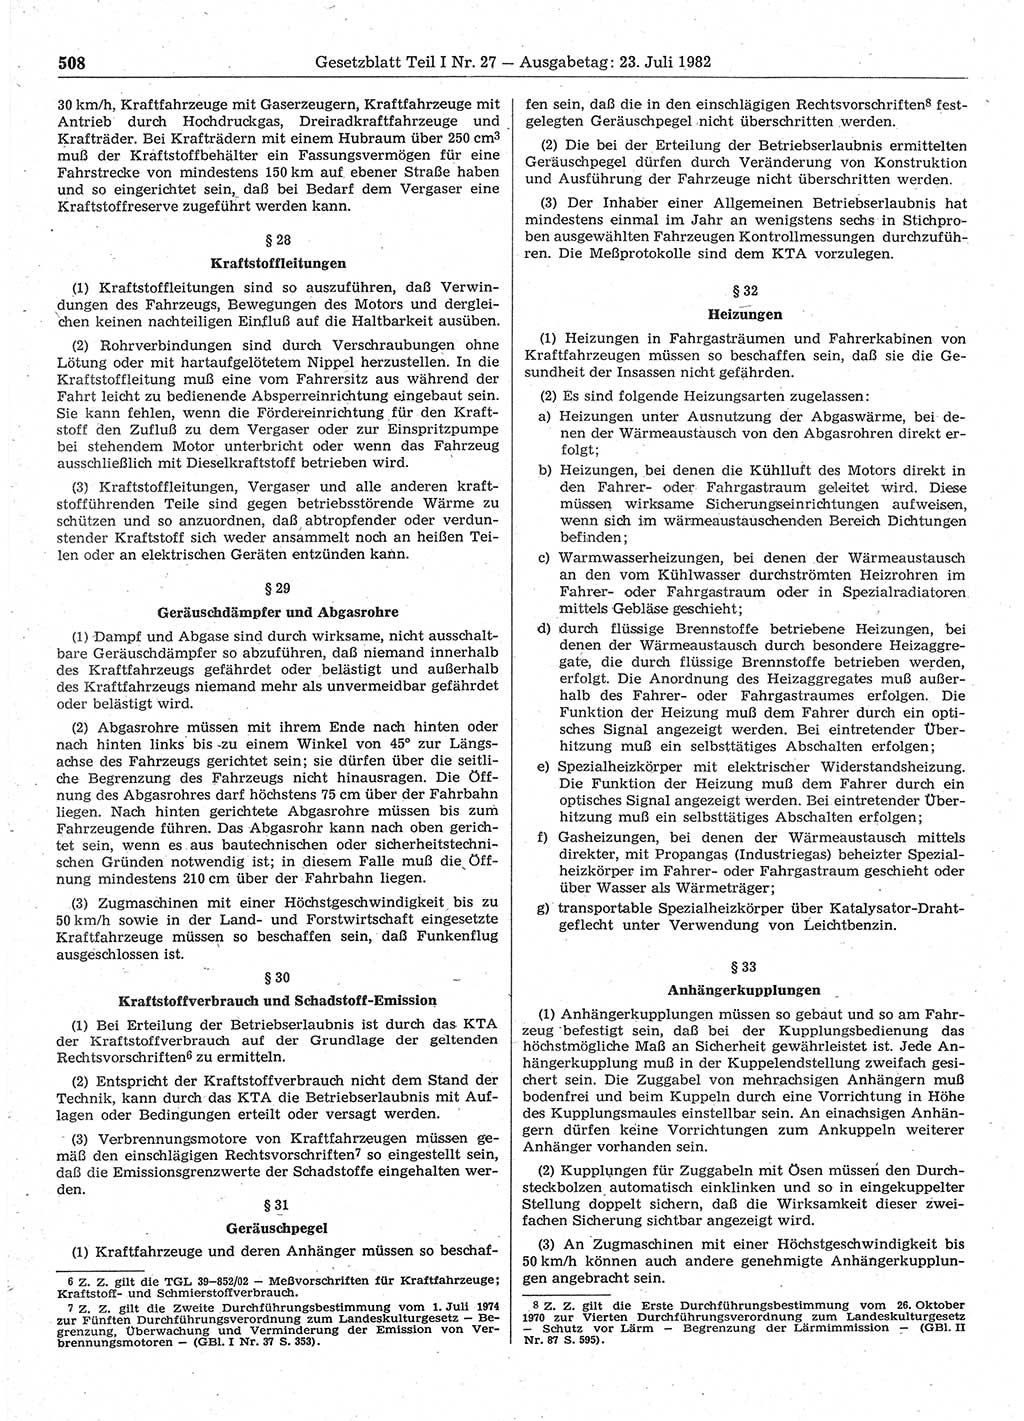 Gesetzblatt (GBl.) der Deutschen Demokratischen Republik (DDR) Teil Ⅰ 1982, Seite 508 (GBl. DDR Ⅰ 1982, S. 508)